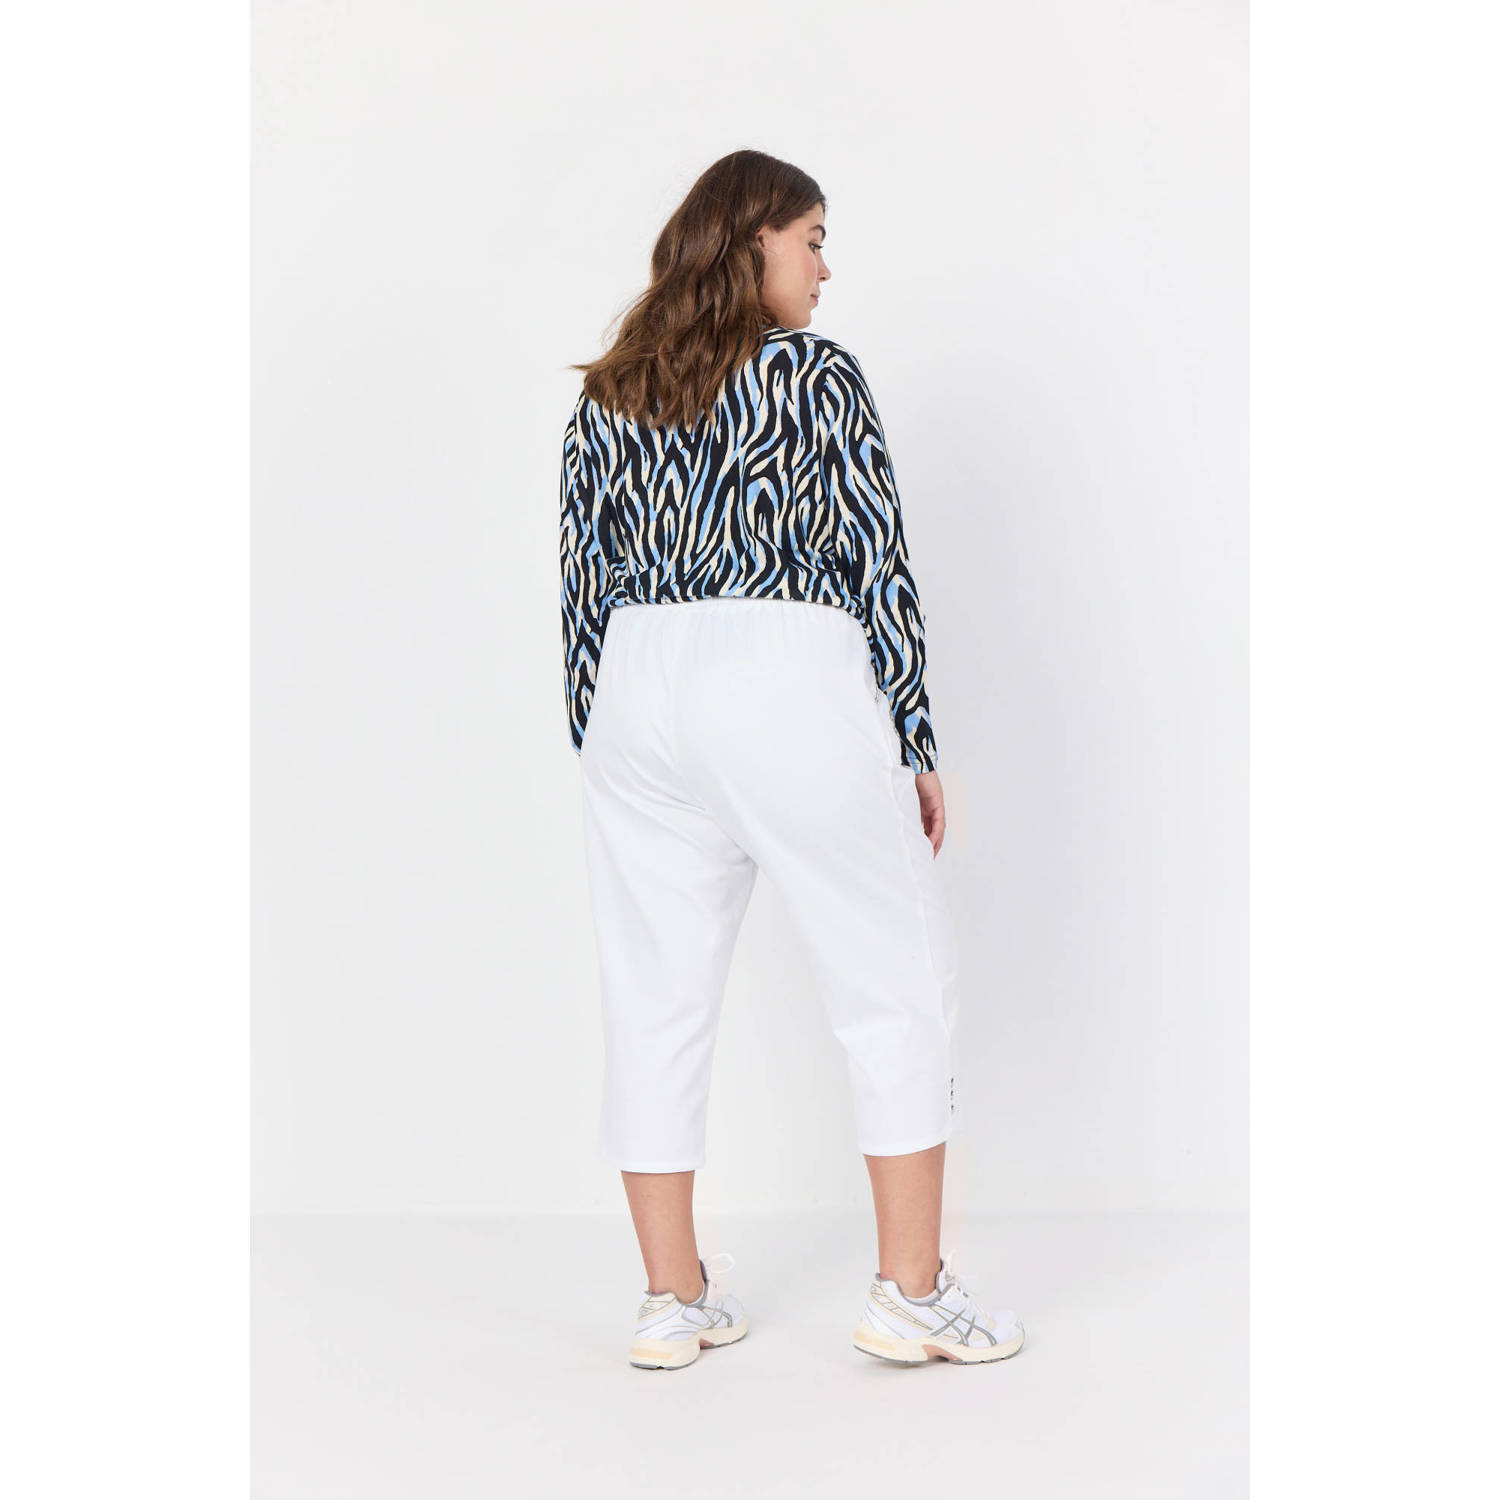 Wasabiconcept blousetop met zebraprint blauw zwart wit